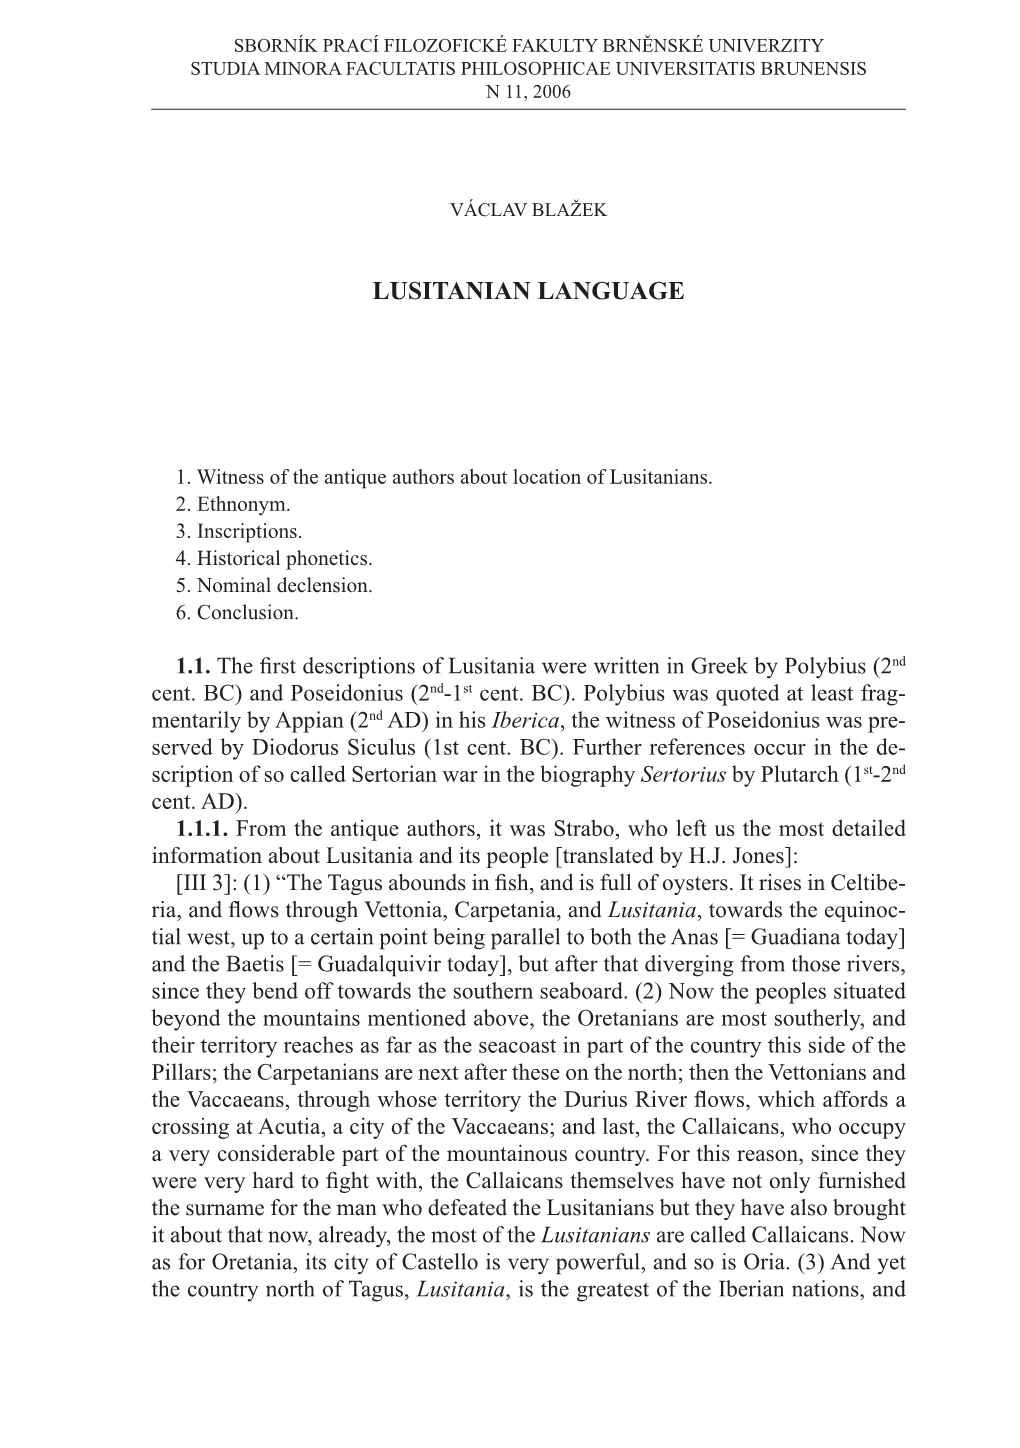 Lusitanian Language